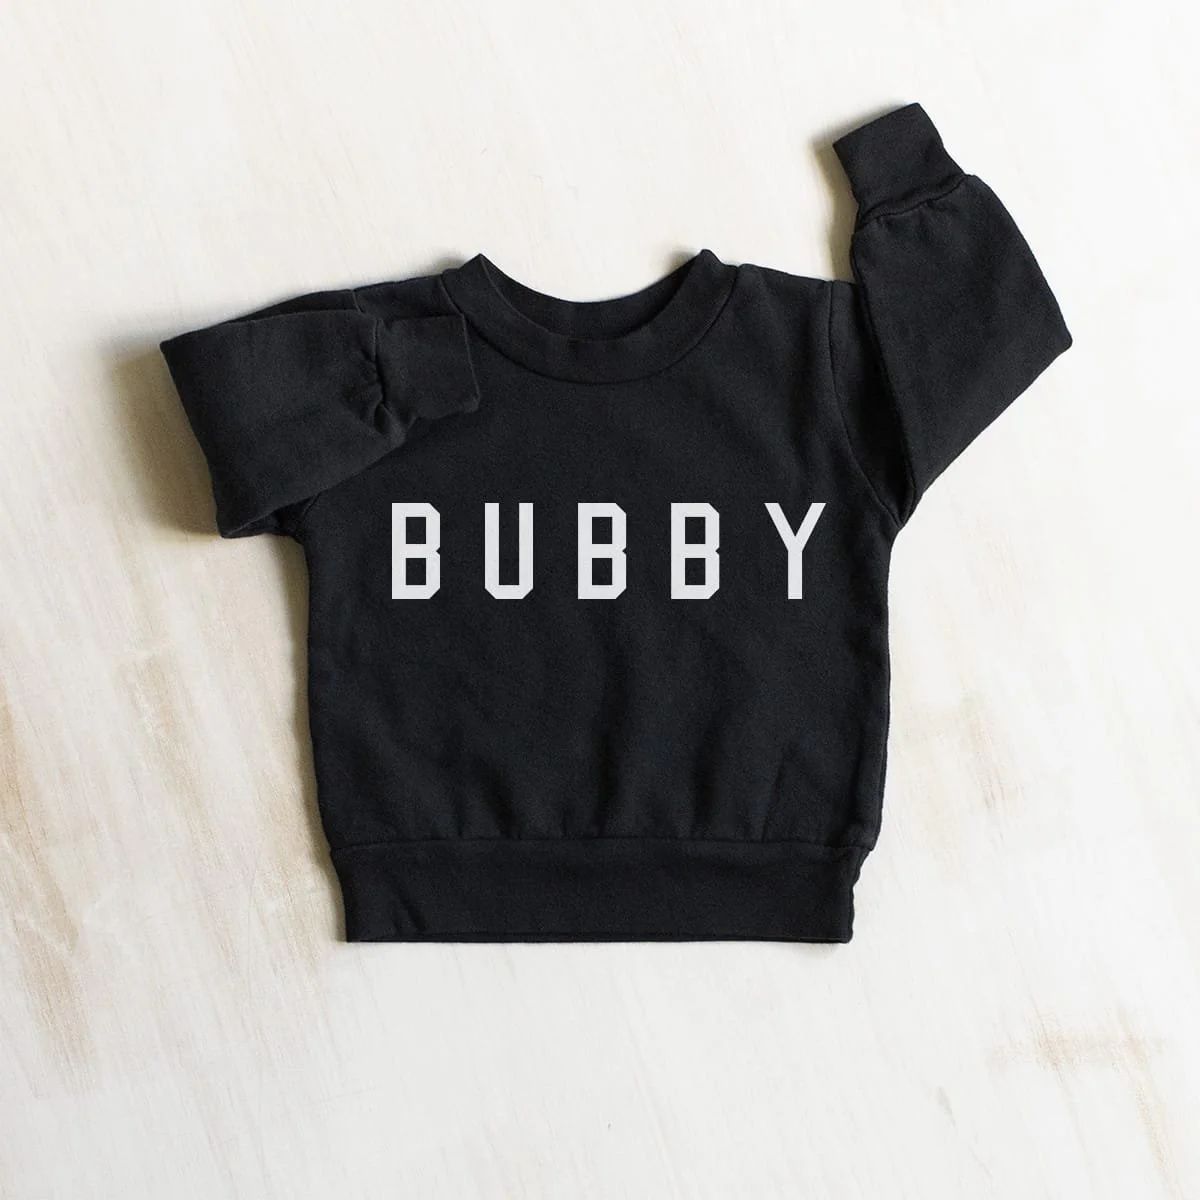 Kids Bubby Everyday Boys Sweatshirt in Black - Ford And Wyatt | Ford and Wyatt